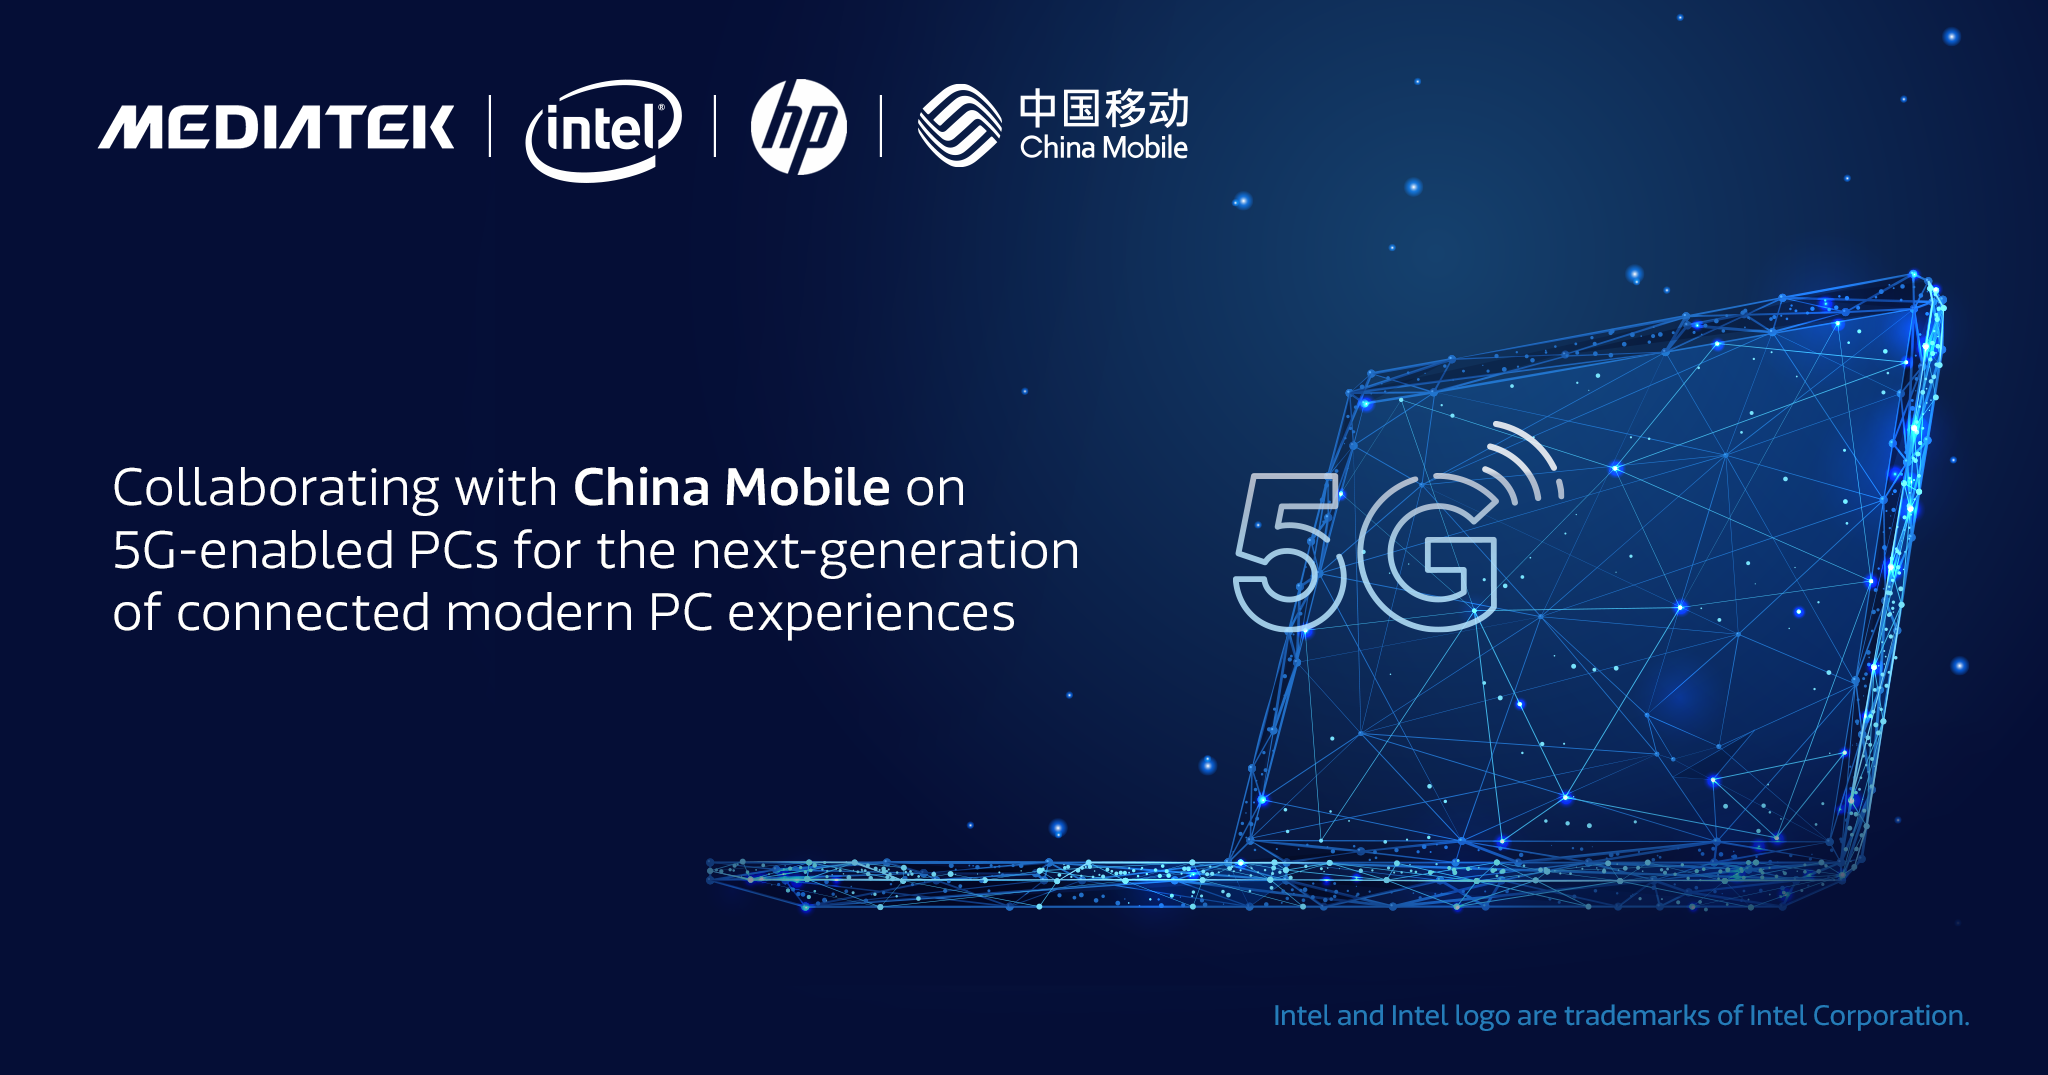 China Mobile Bersama Intel, HP dan MediaTek Akan Hadirkan PC dengan Koneksi 5G